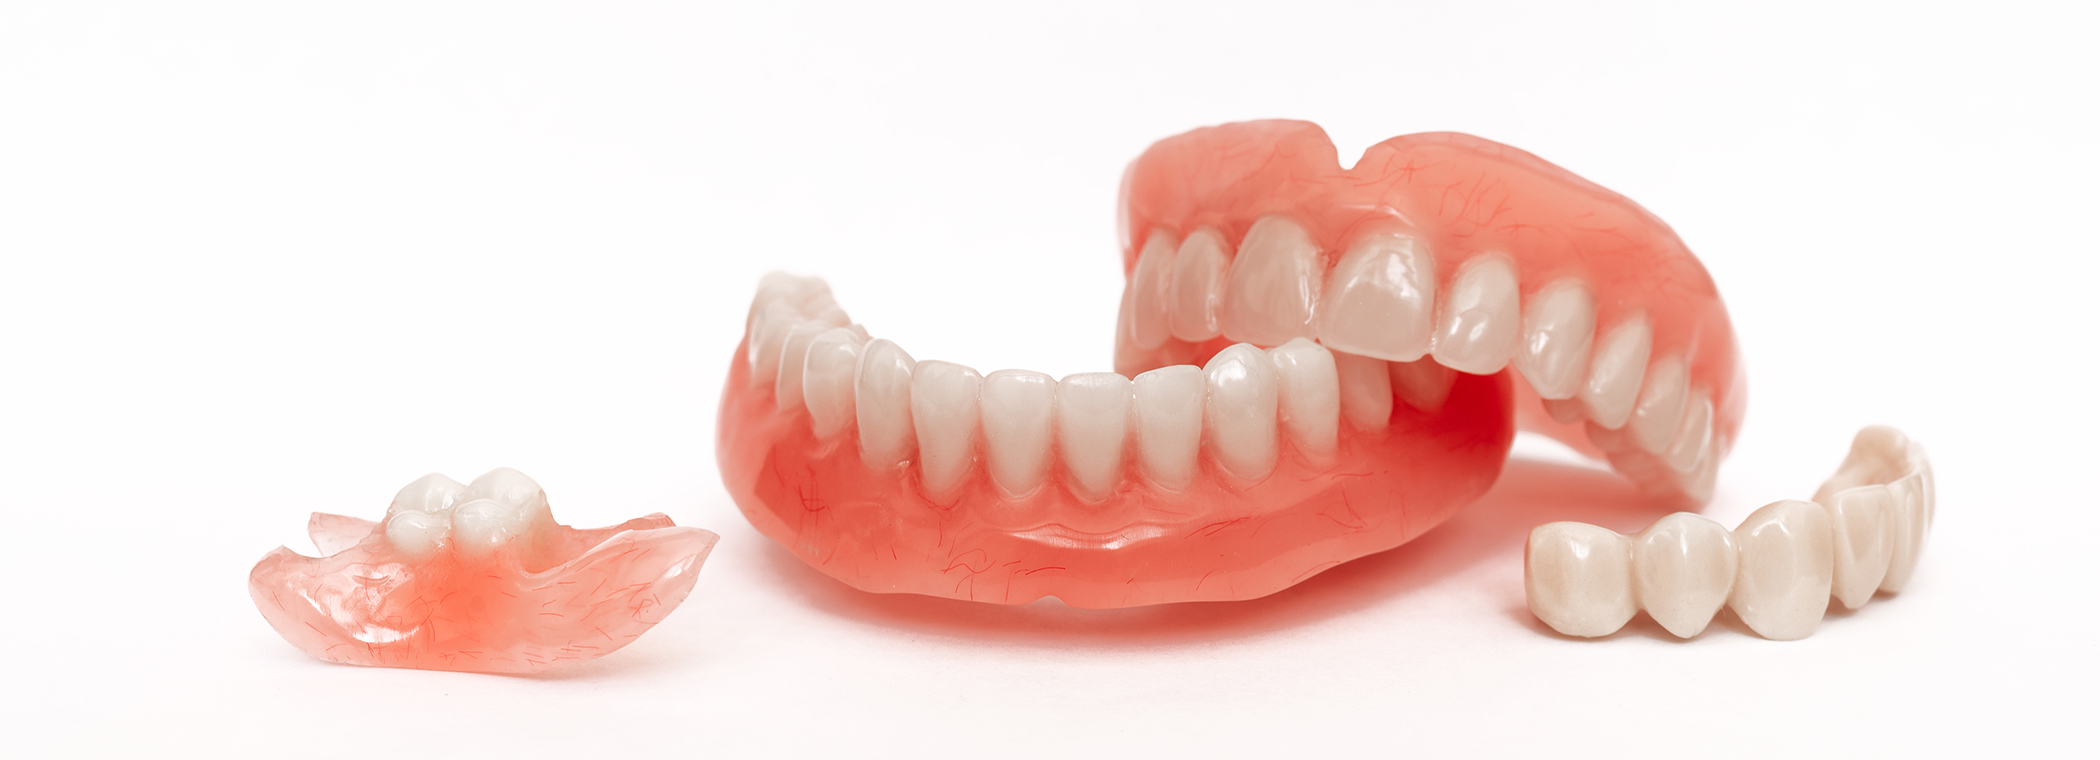 早期発見・早期治療が<br>歯周病を改善させるポイント